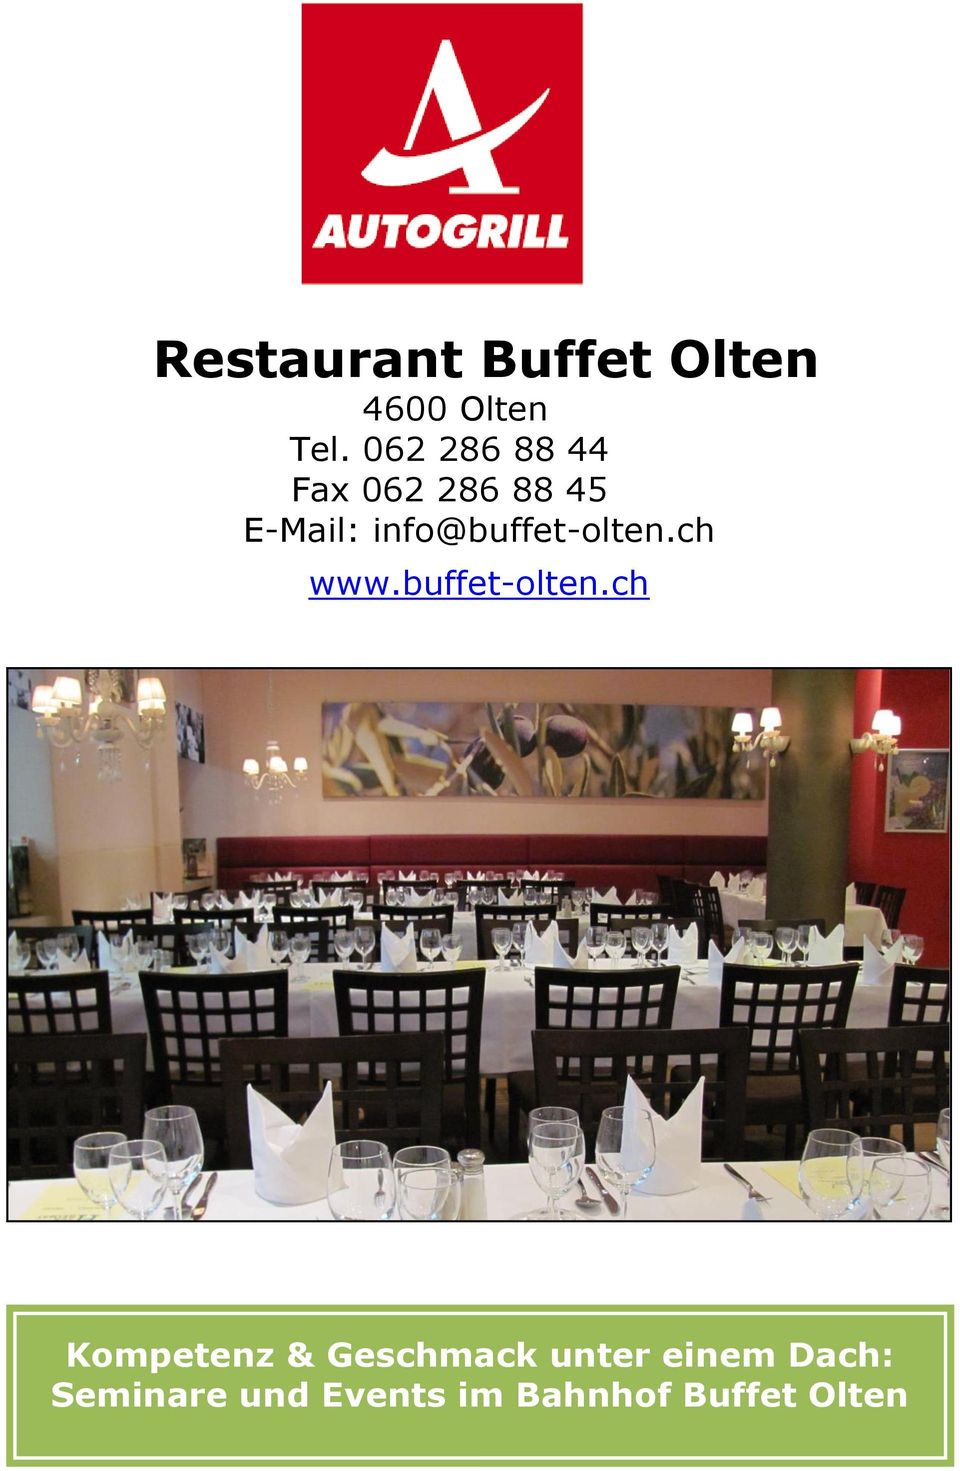 info@buffet-olten.